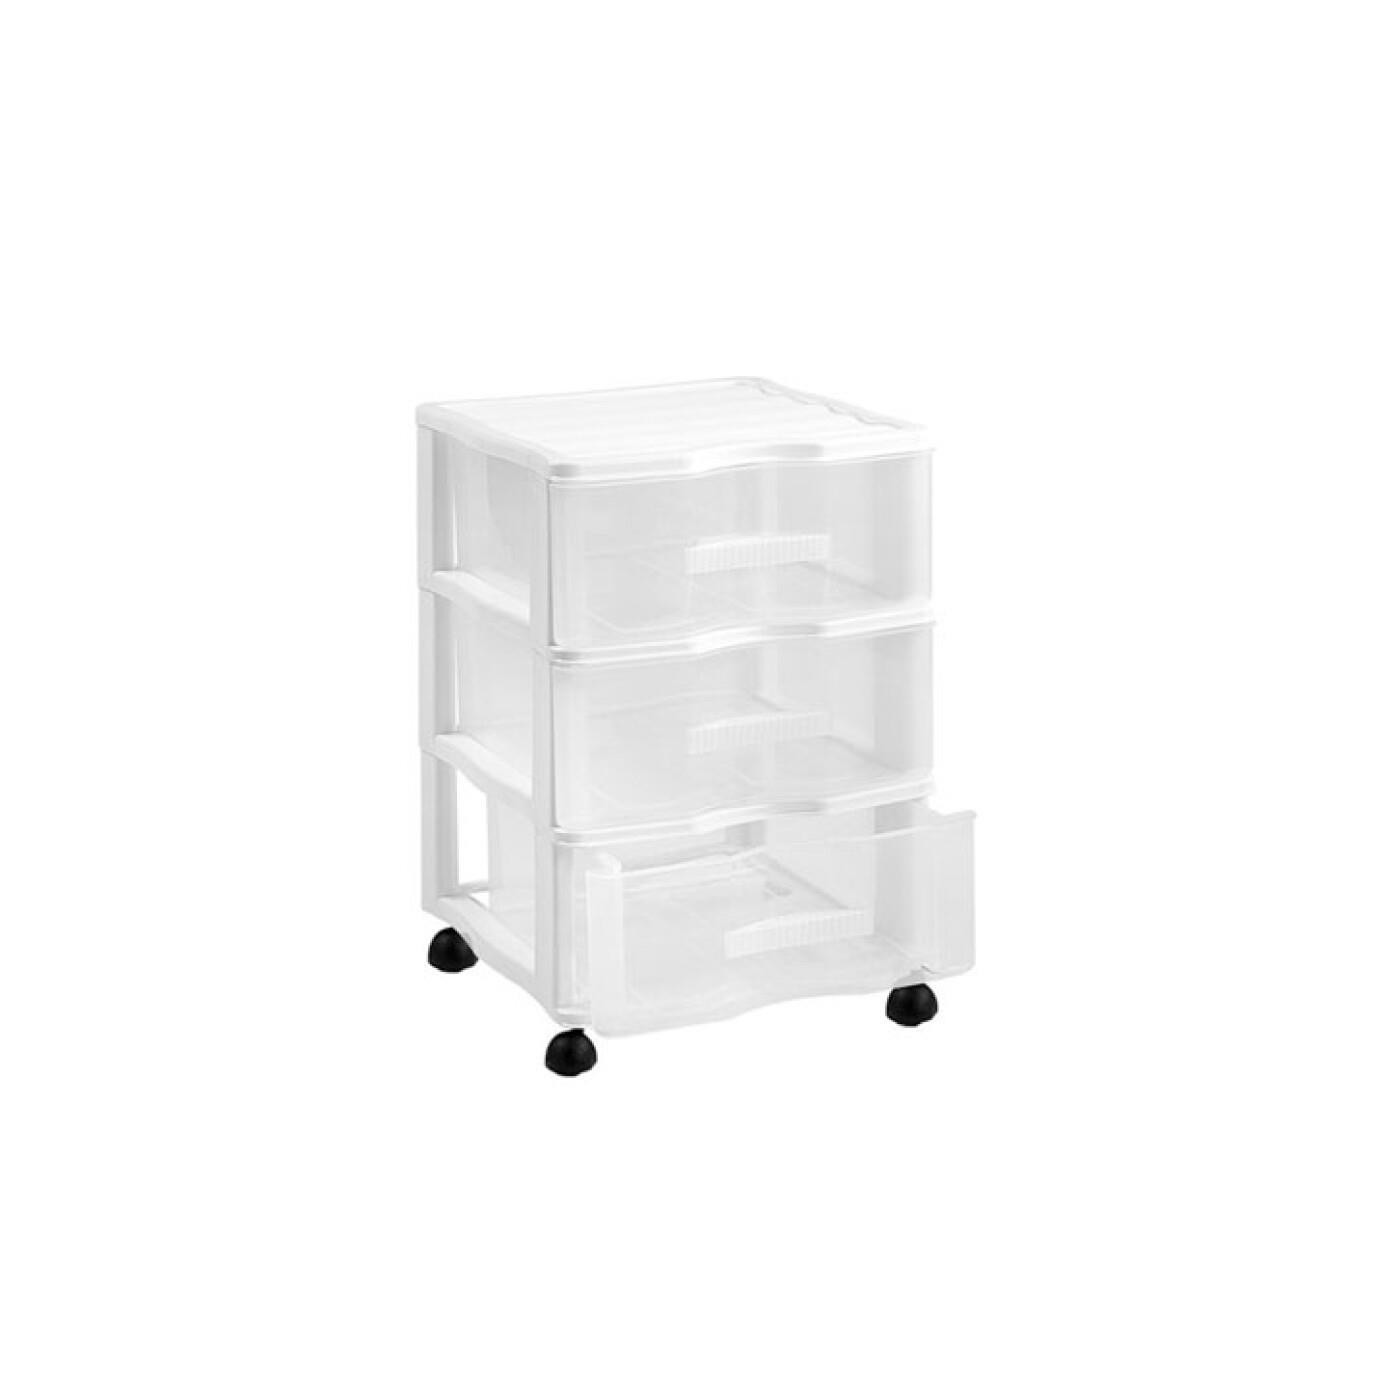 Cajonera de plástico Wagon, 2 cajones transparentes, torre almacenaje,  organizador auxiliar, armario, baño, oficina (Blanco, 32